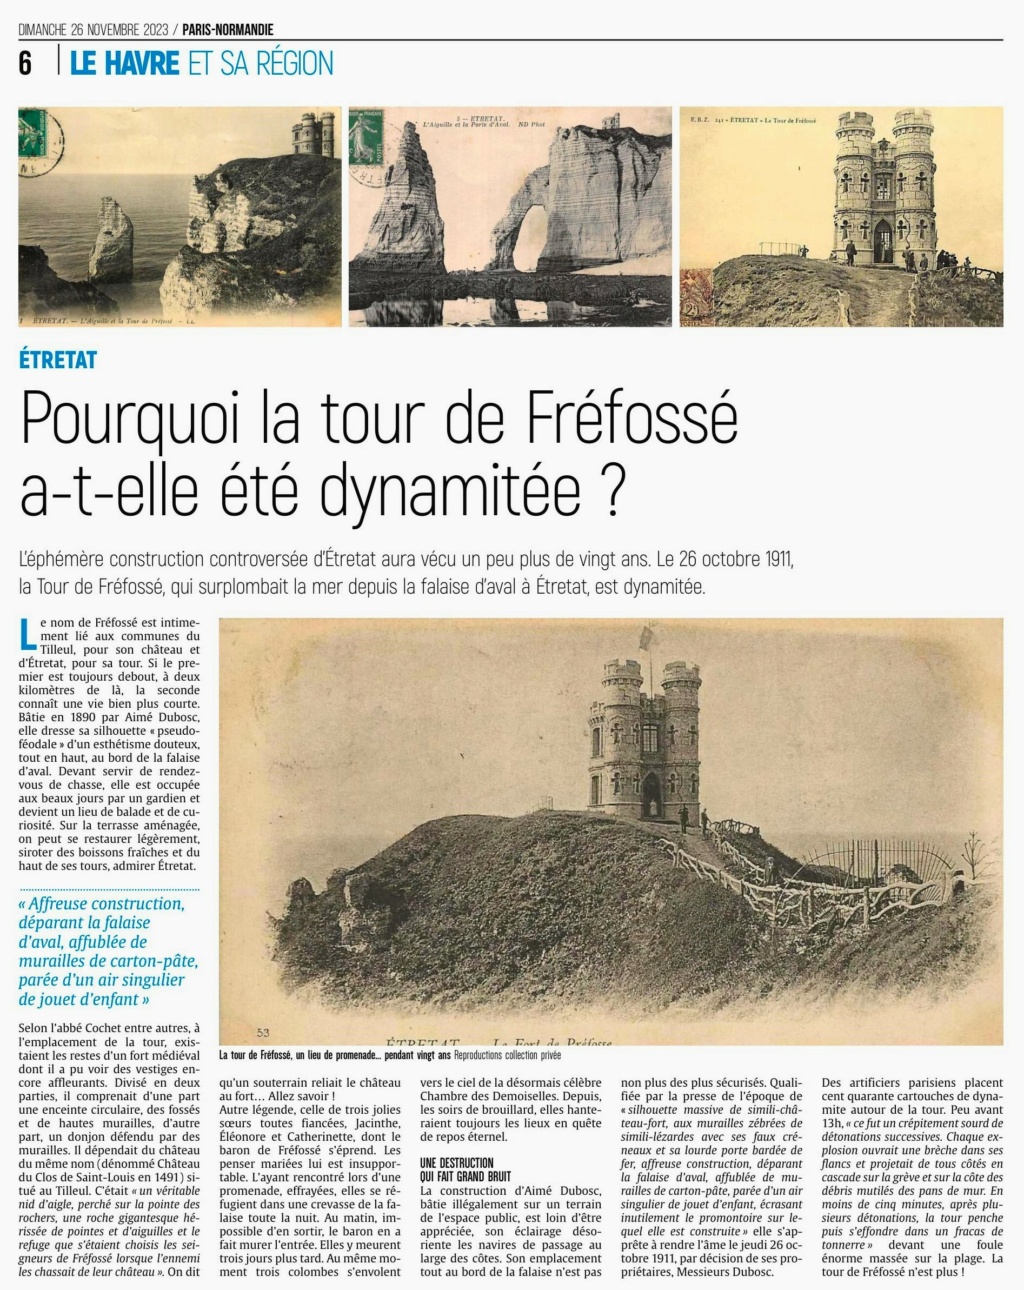 Etretat - Etretat - Pourquoi la tour de Fréfossé a-t-elle été dynamitée ? 2023-147